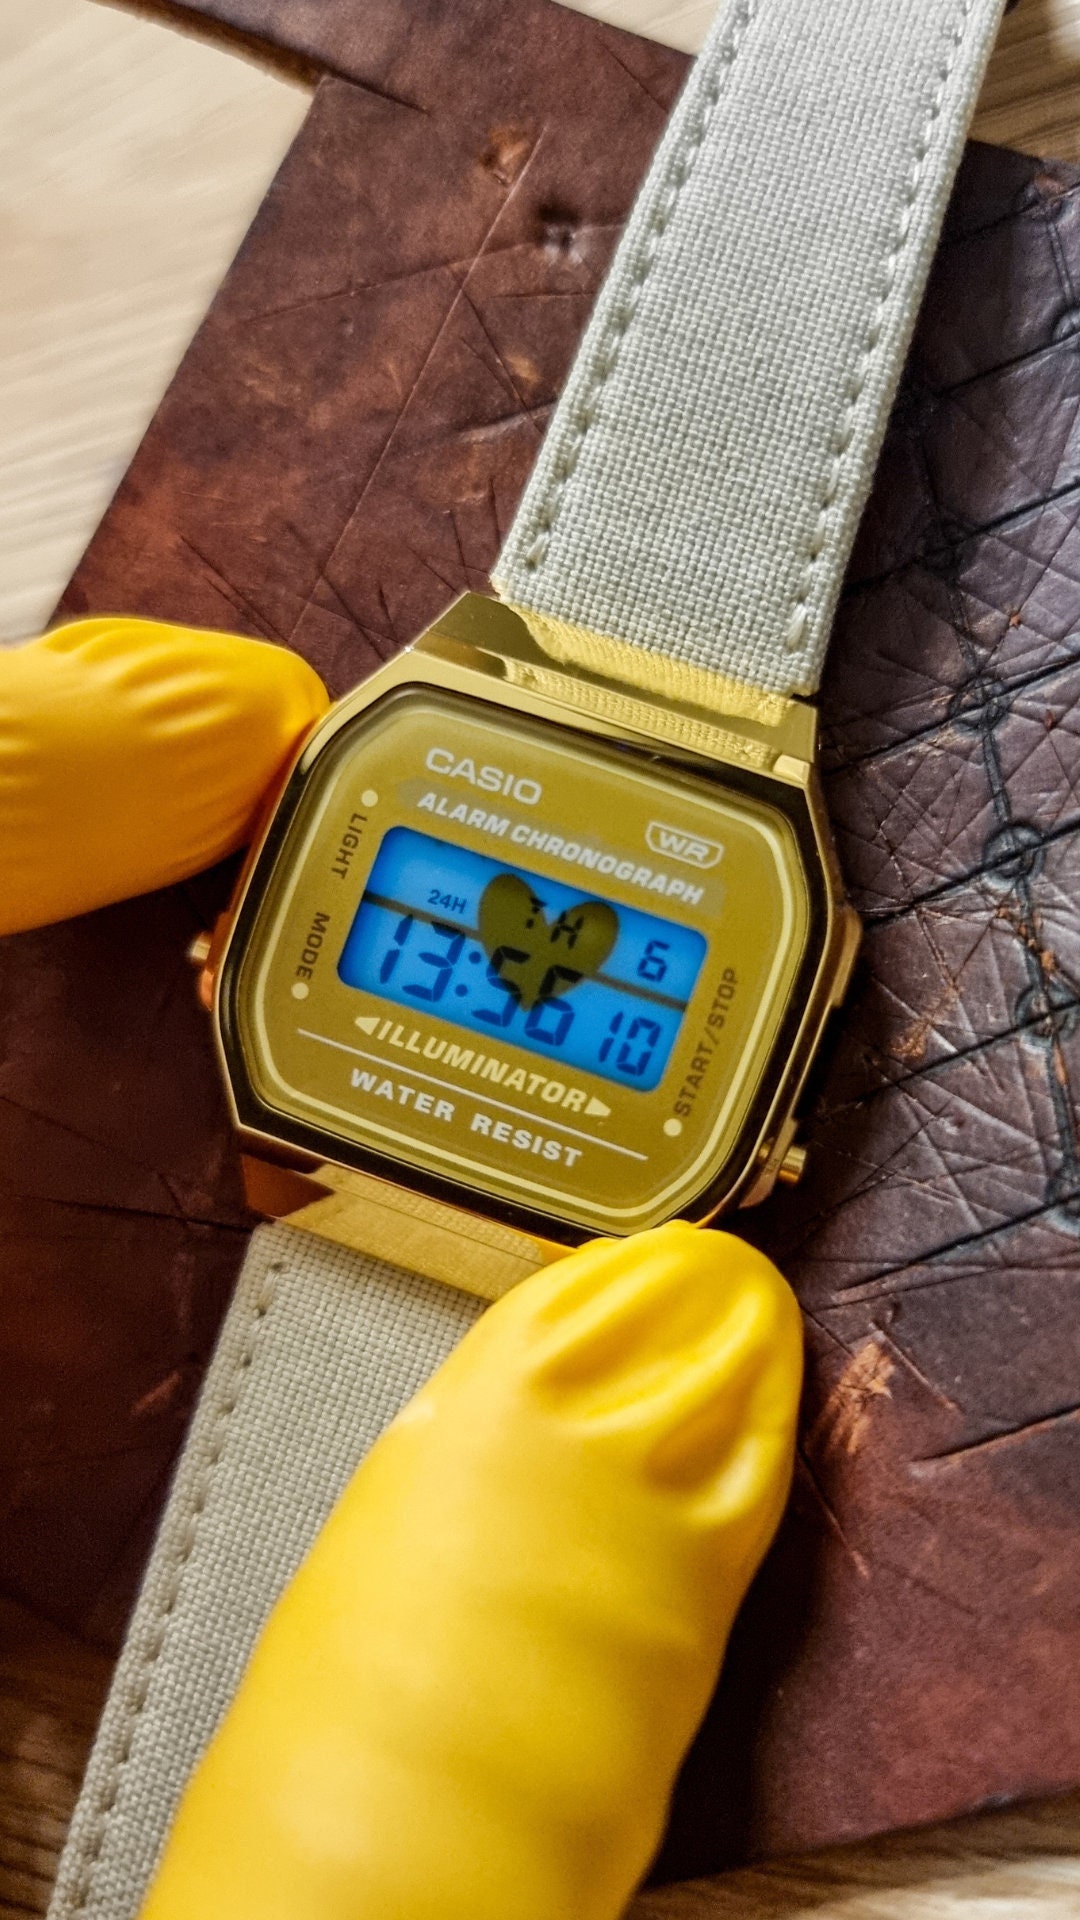 Este reloj calculadora Casio tiene mejores reseñas en  que el Apple  Watch